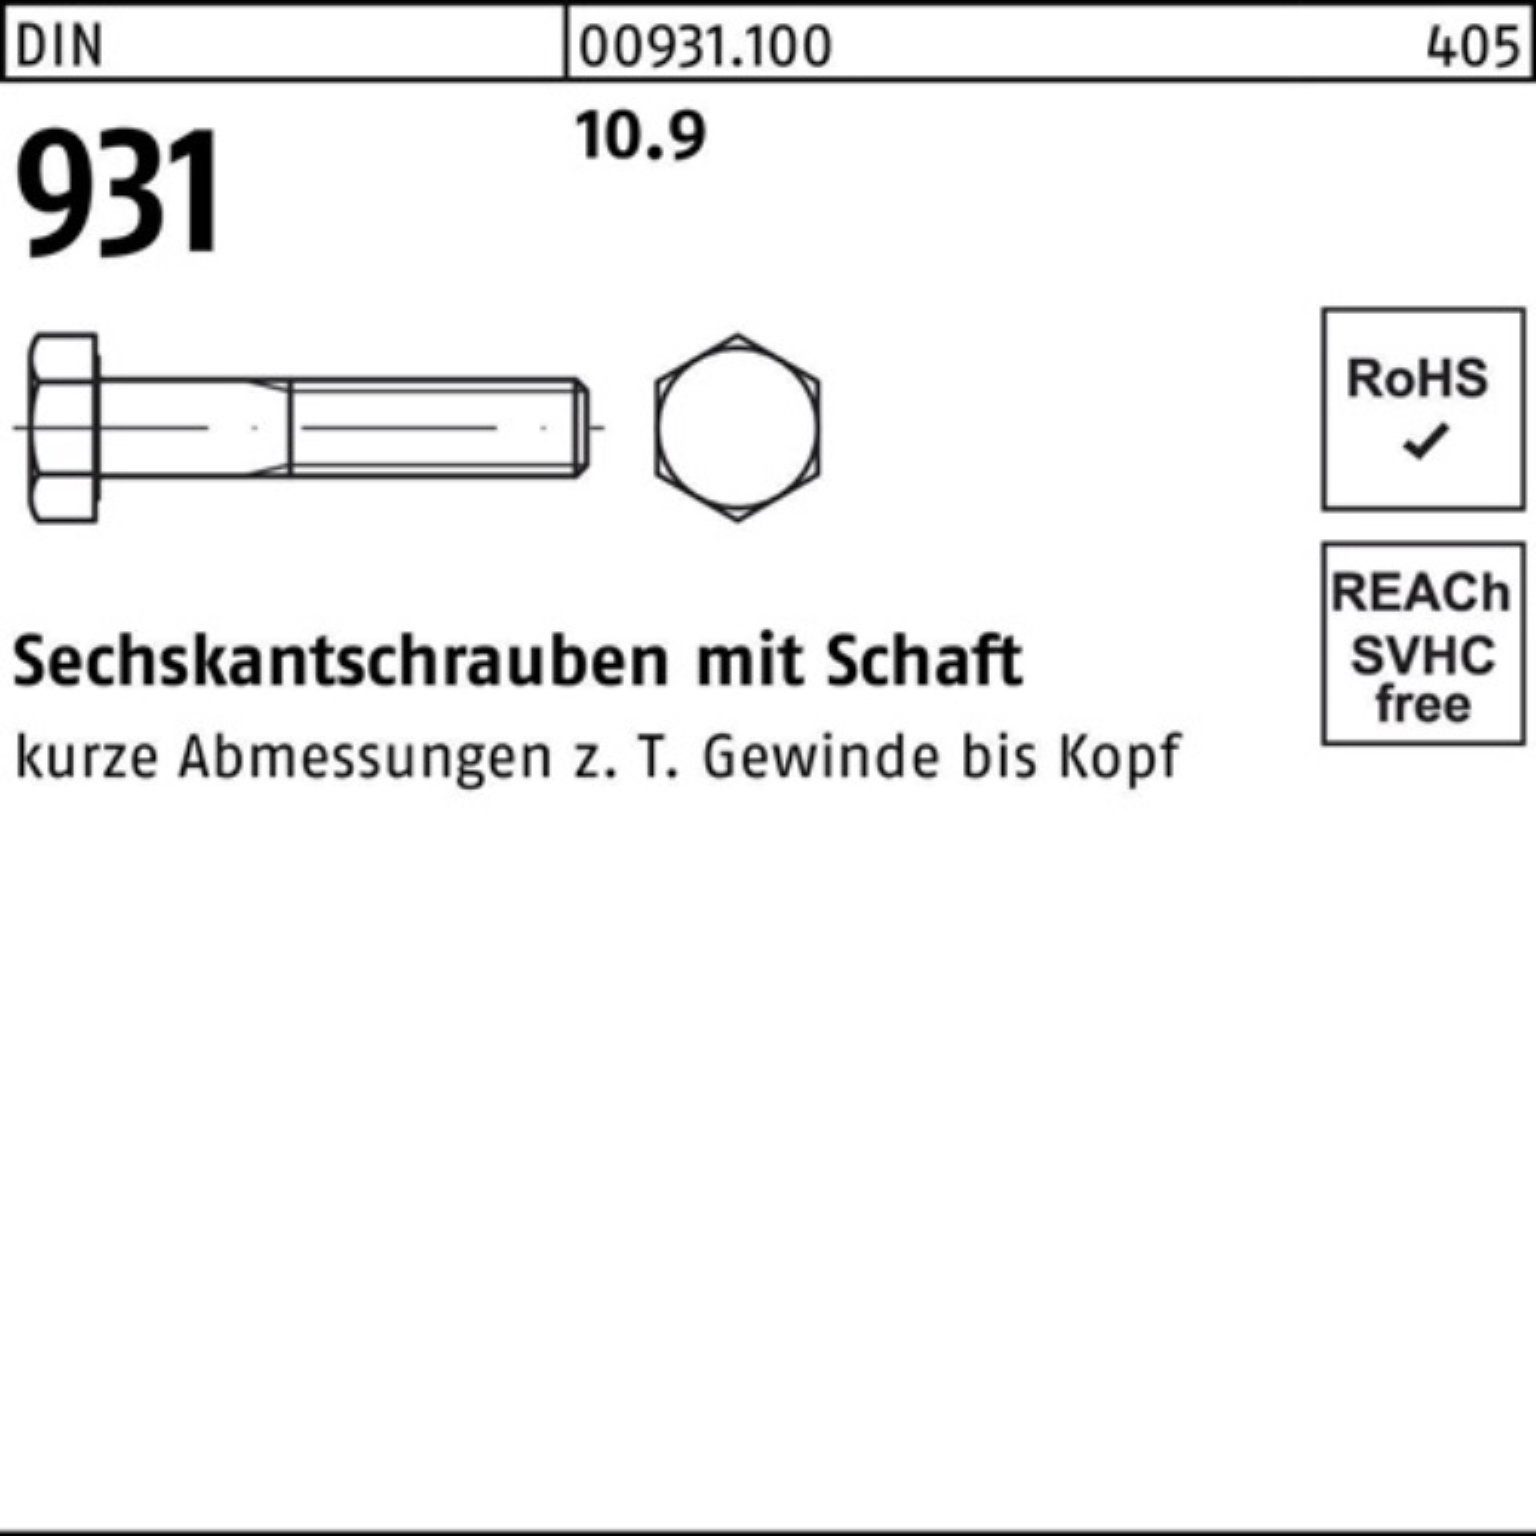 10.9 M33x Pack Schaft Sechskantschraube 931 Reyher Sechskantschraube DIN 1 DIN Stück 100er 240